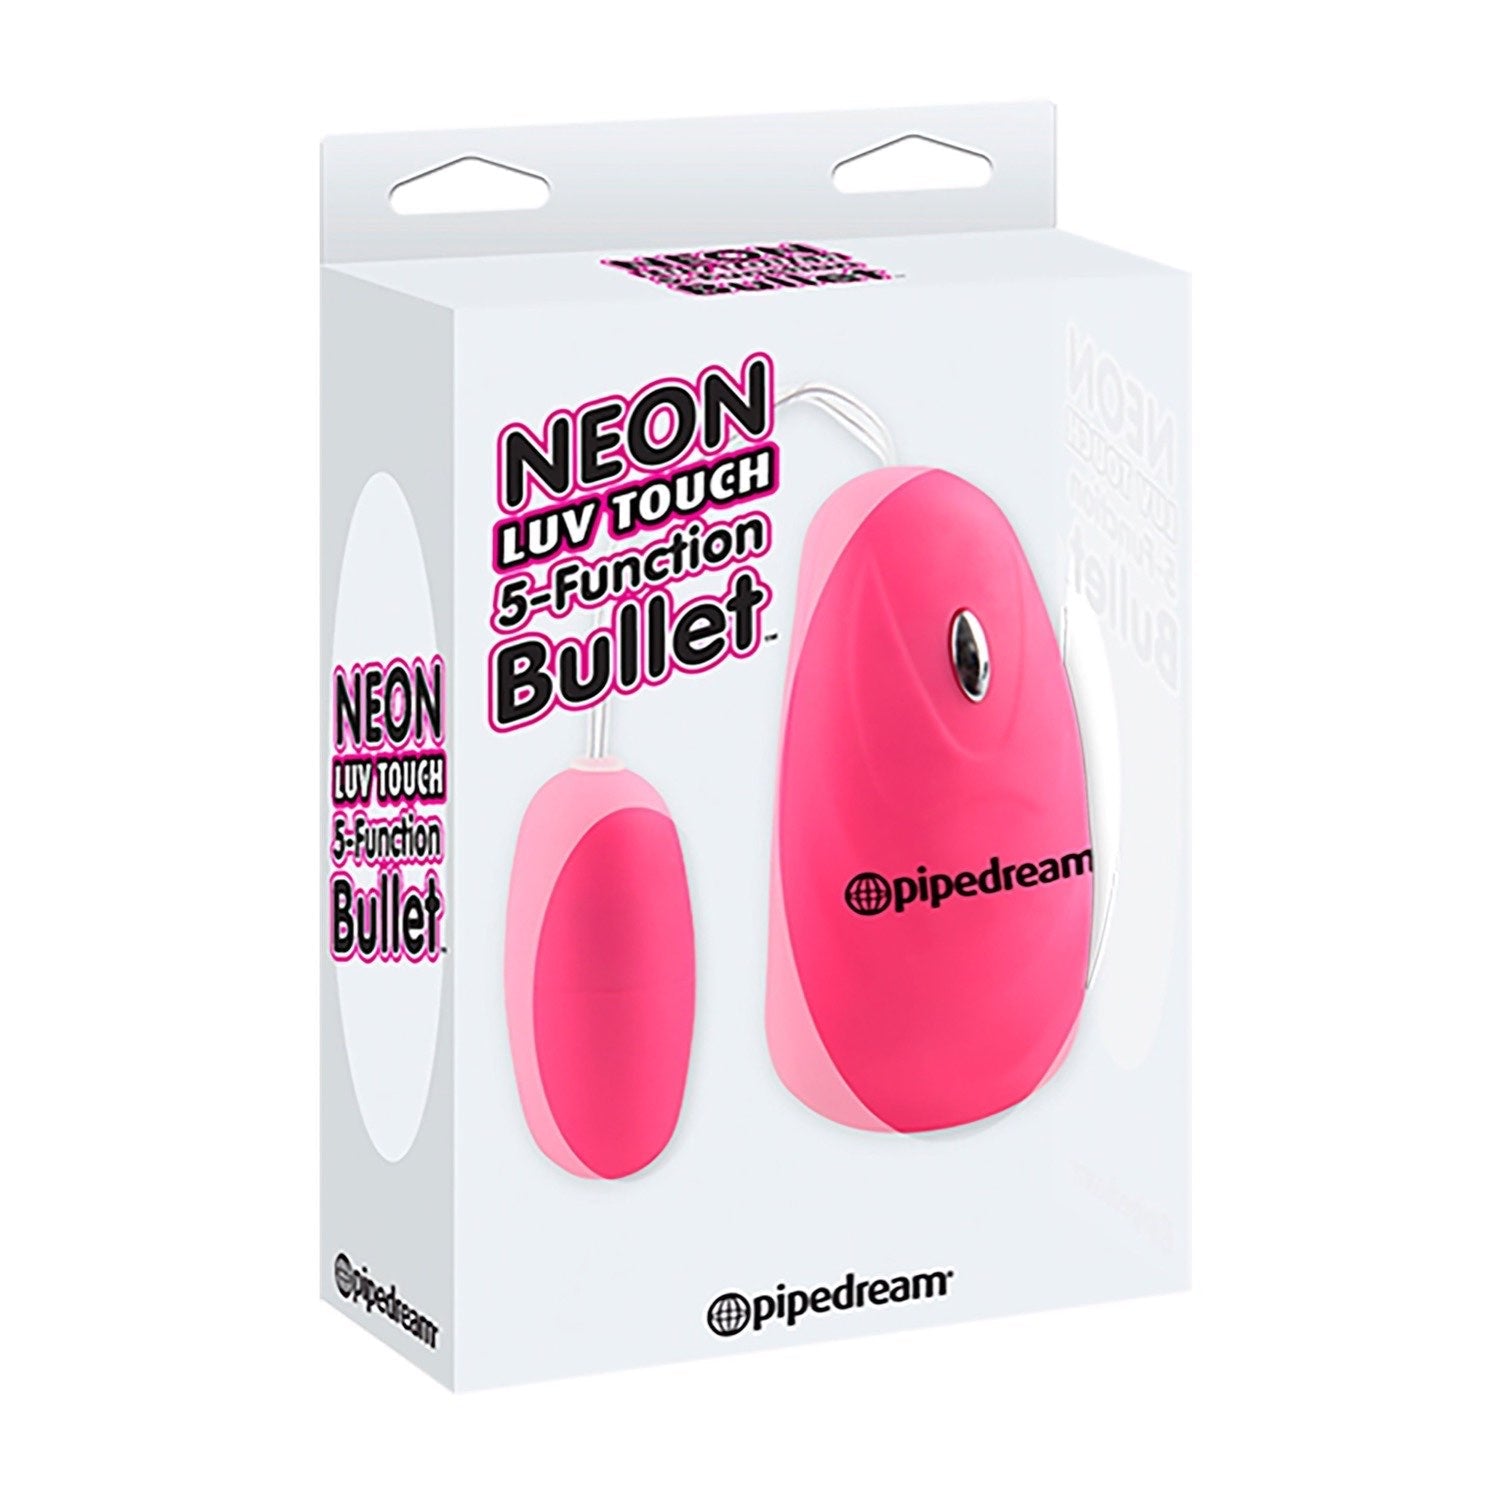 爱触摸 Neon 5 功能子弹头 - 粉色 5.7 厘米（2.25 英寸）子弹头 by Pipedream